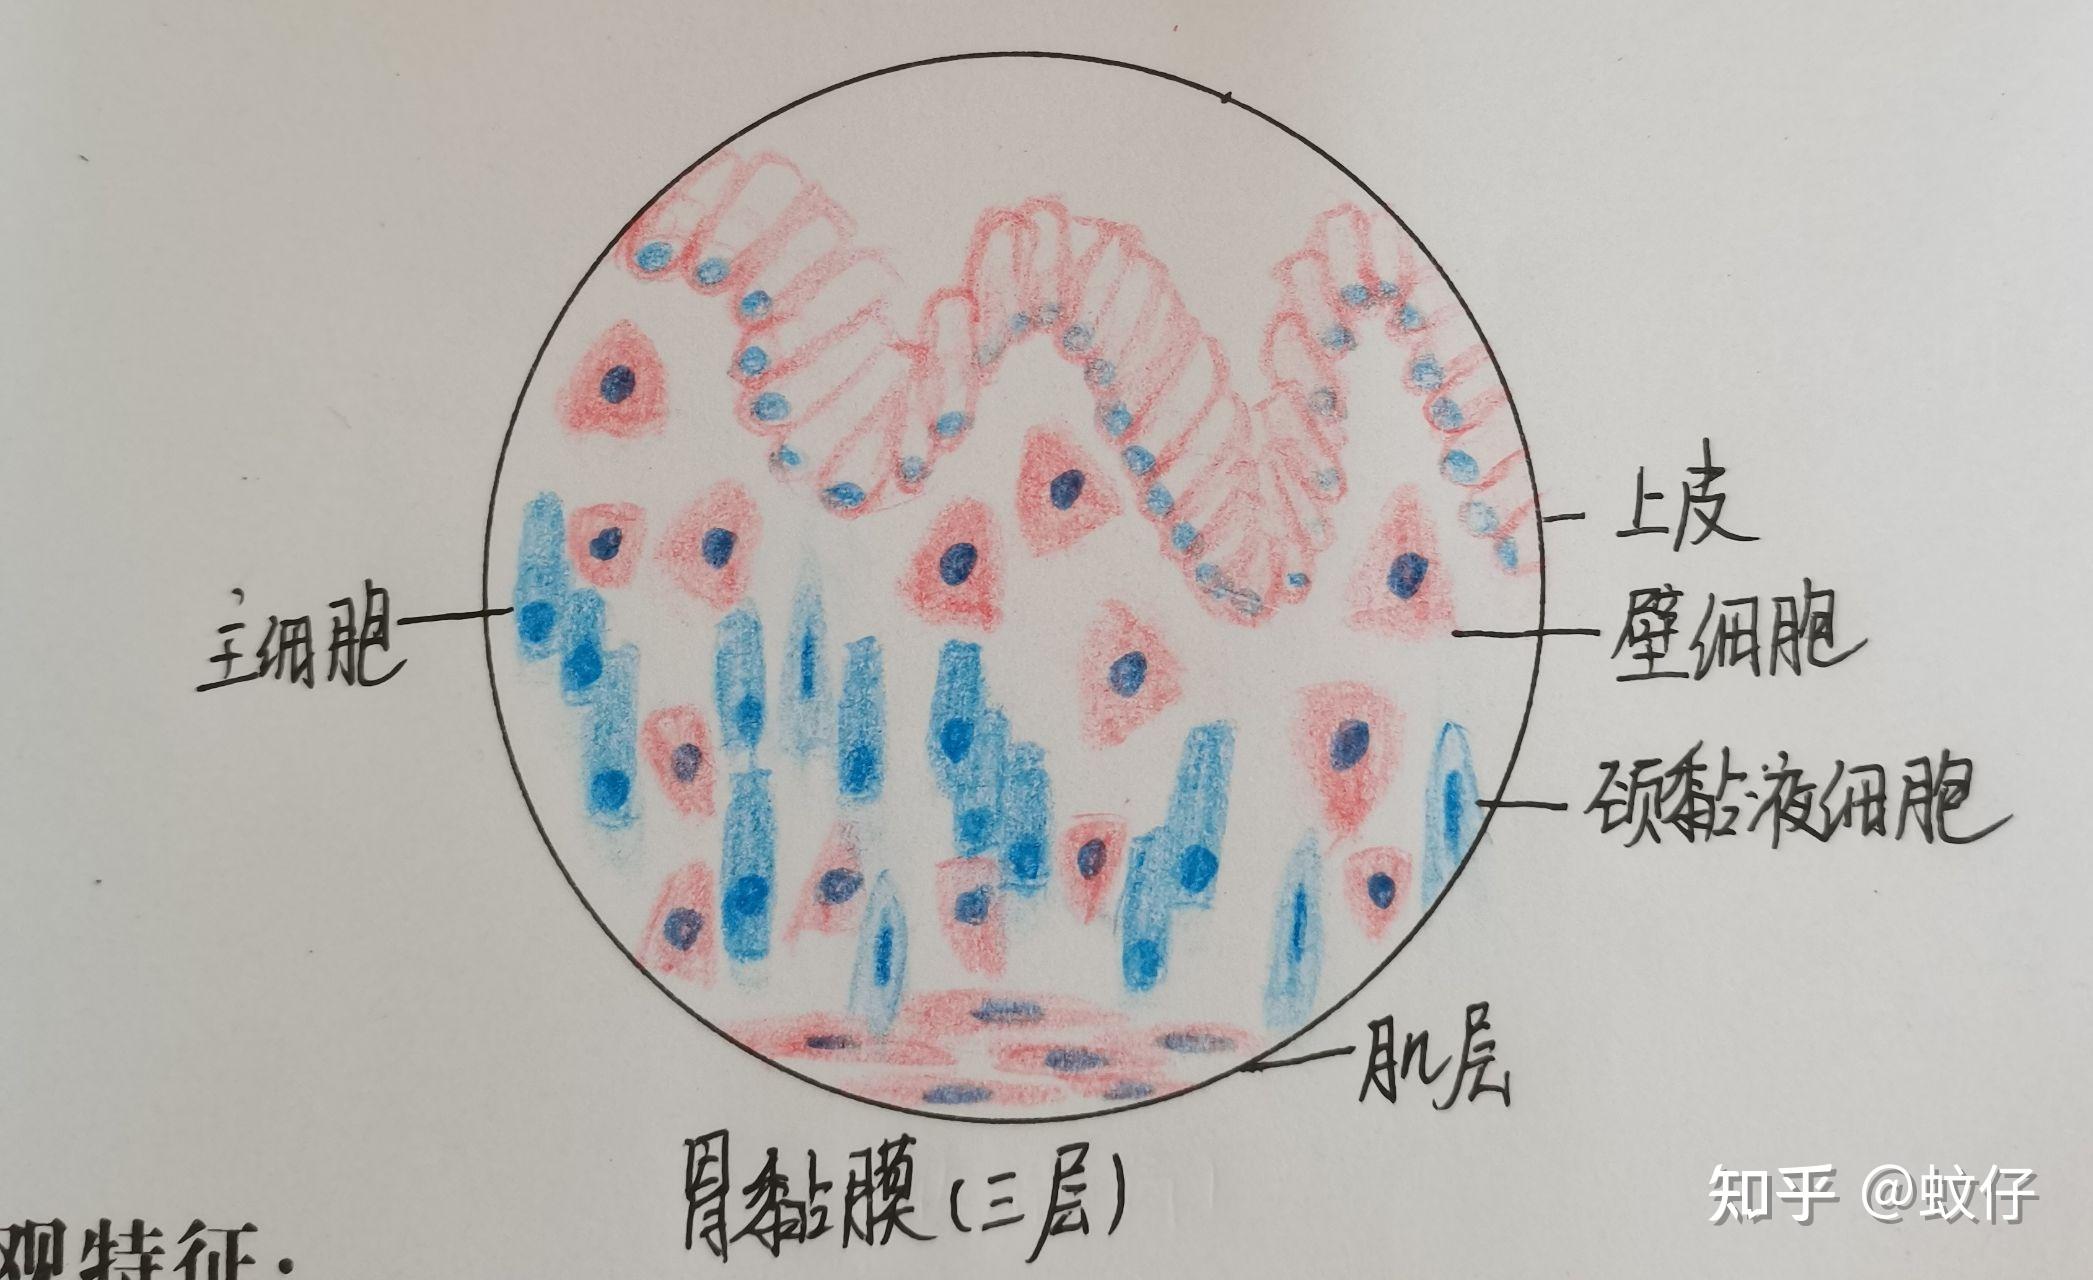 组织学与胚胎学红蓝铅笔绘图 